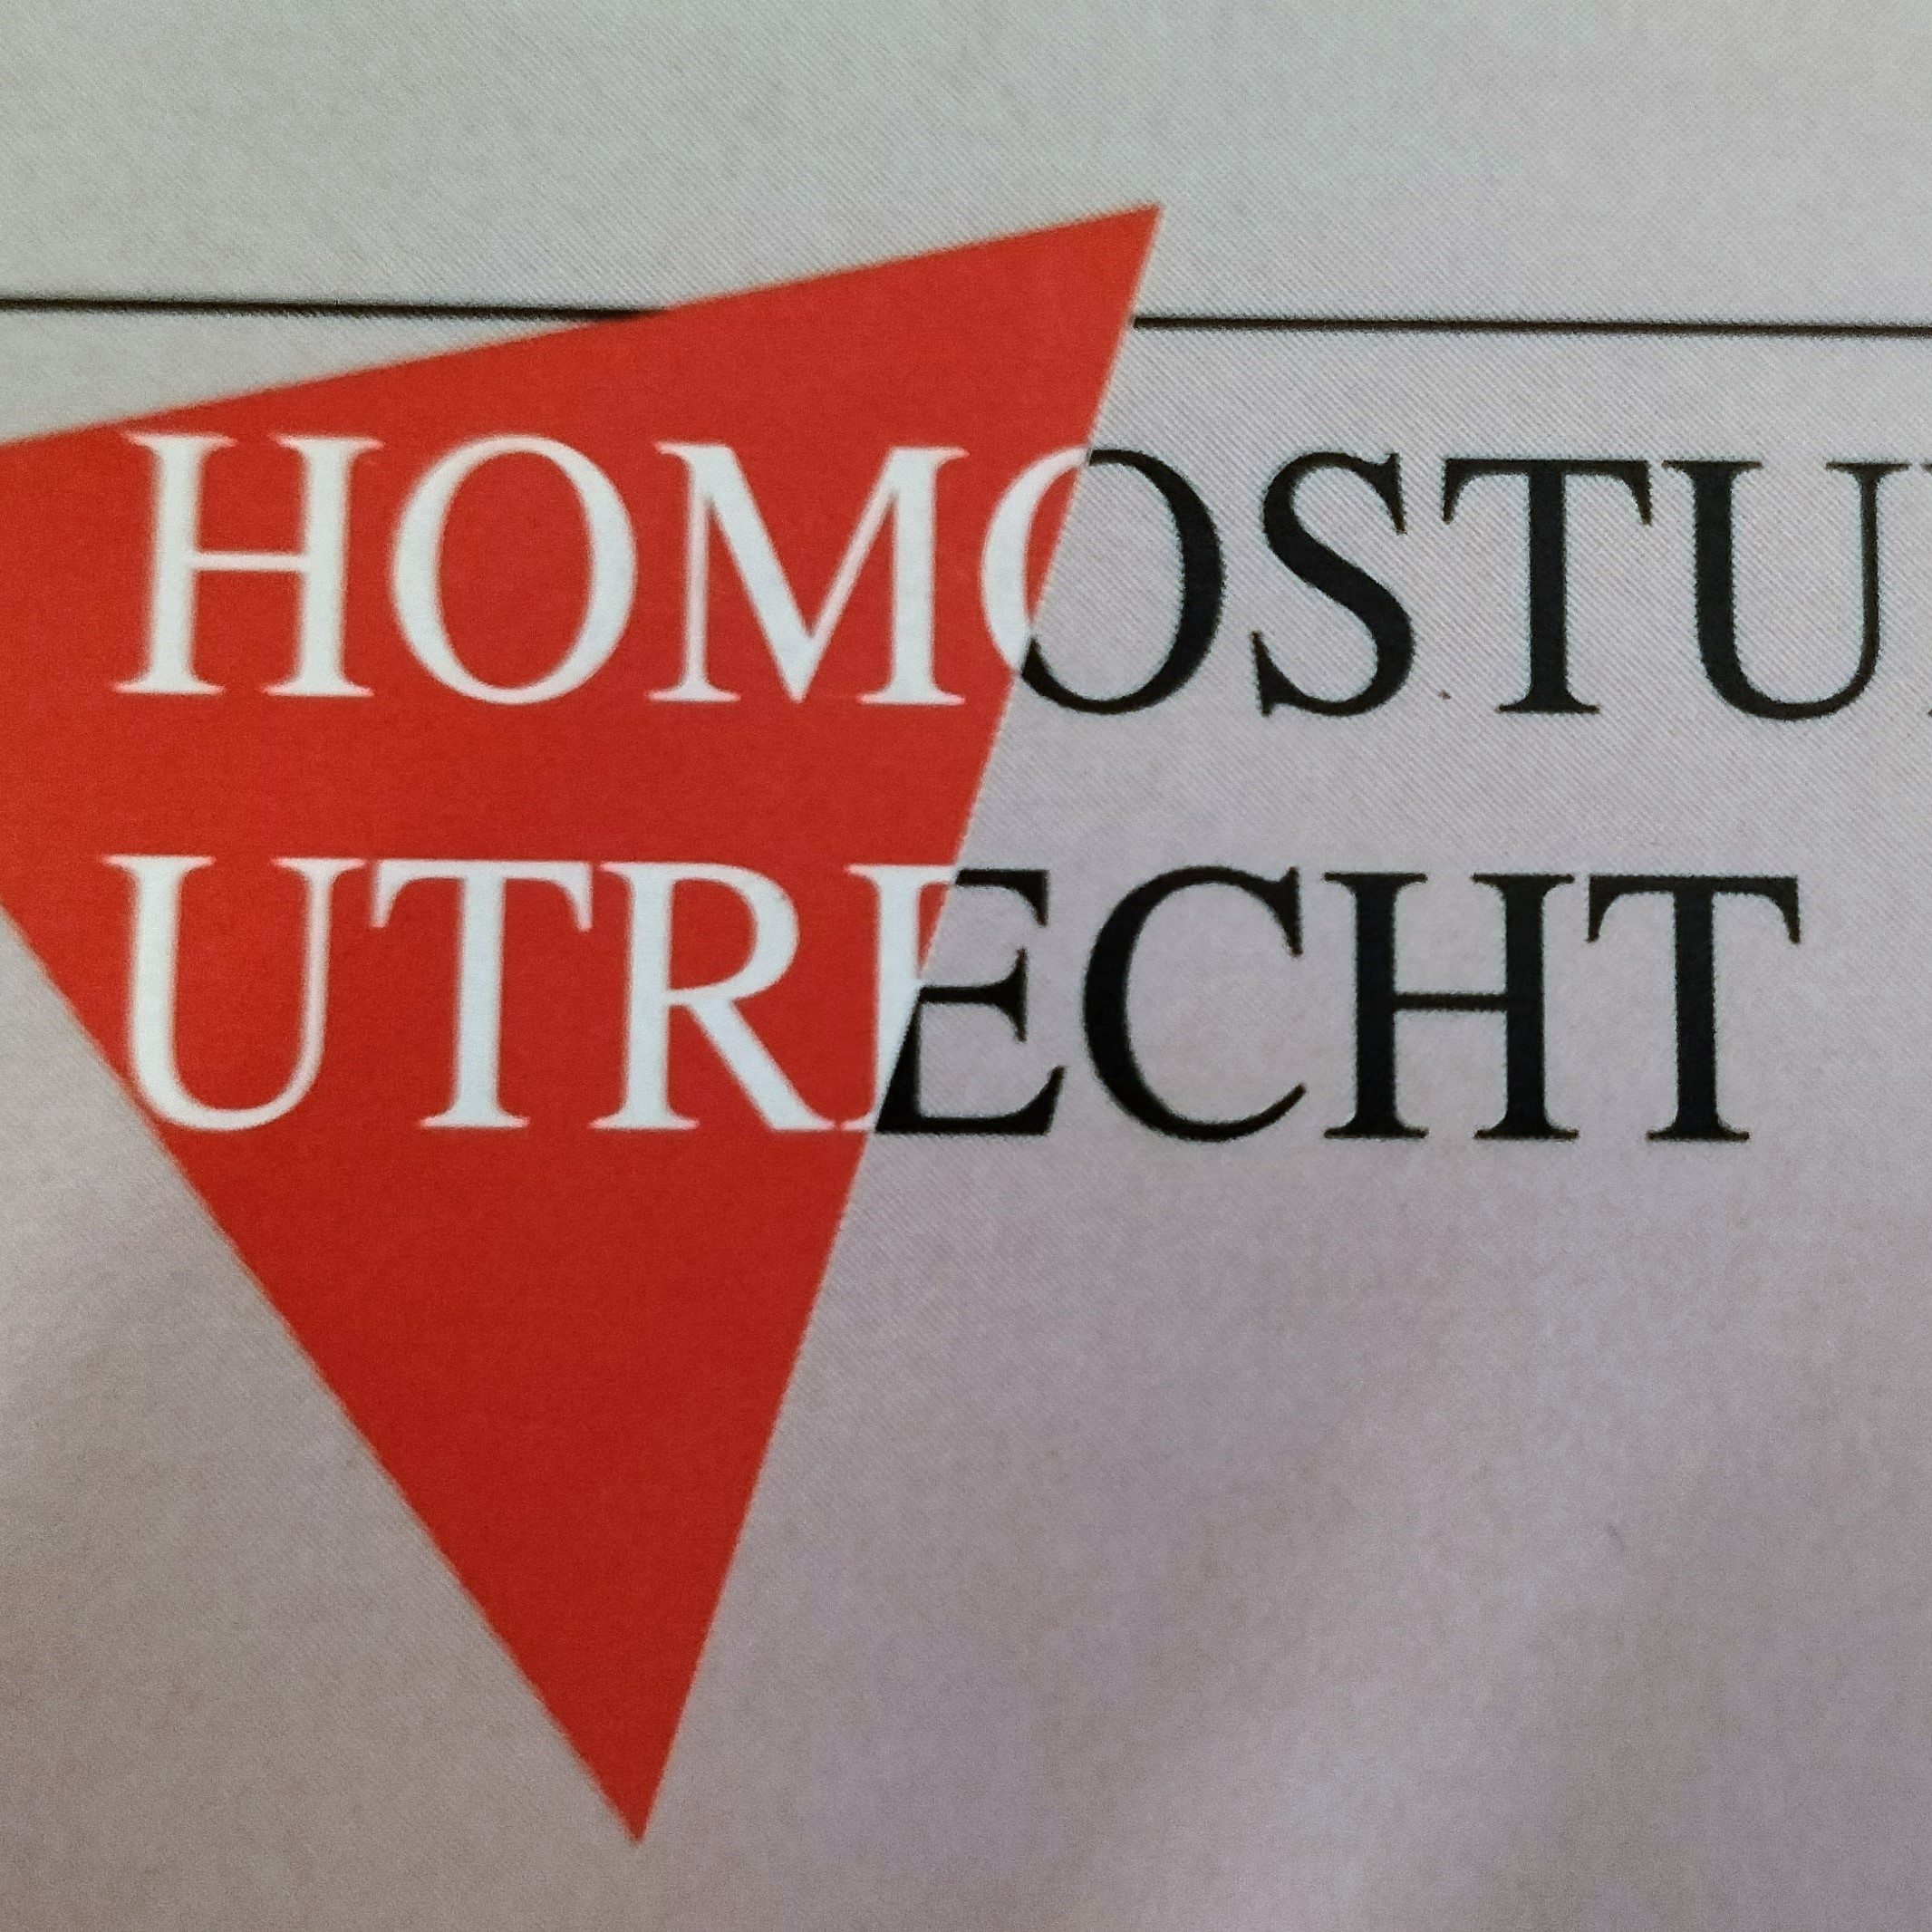 Logo Homostudies Utrecht